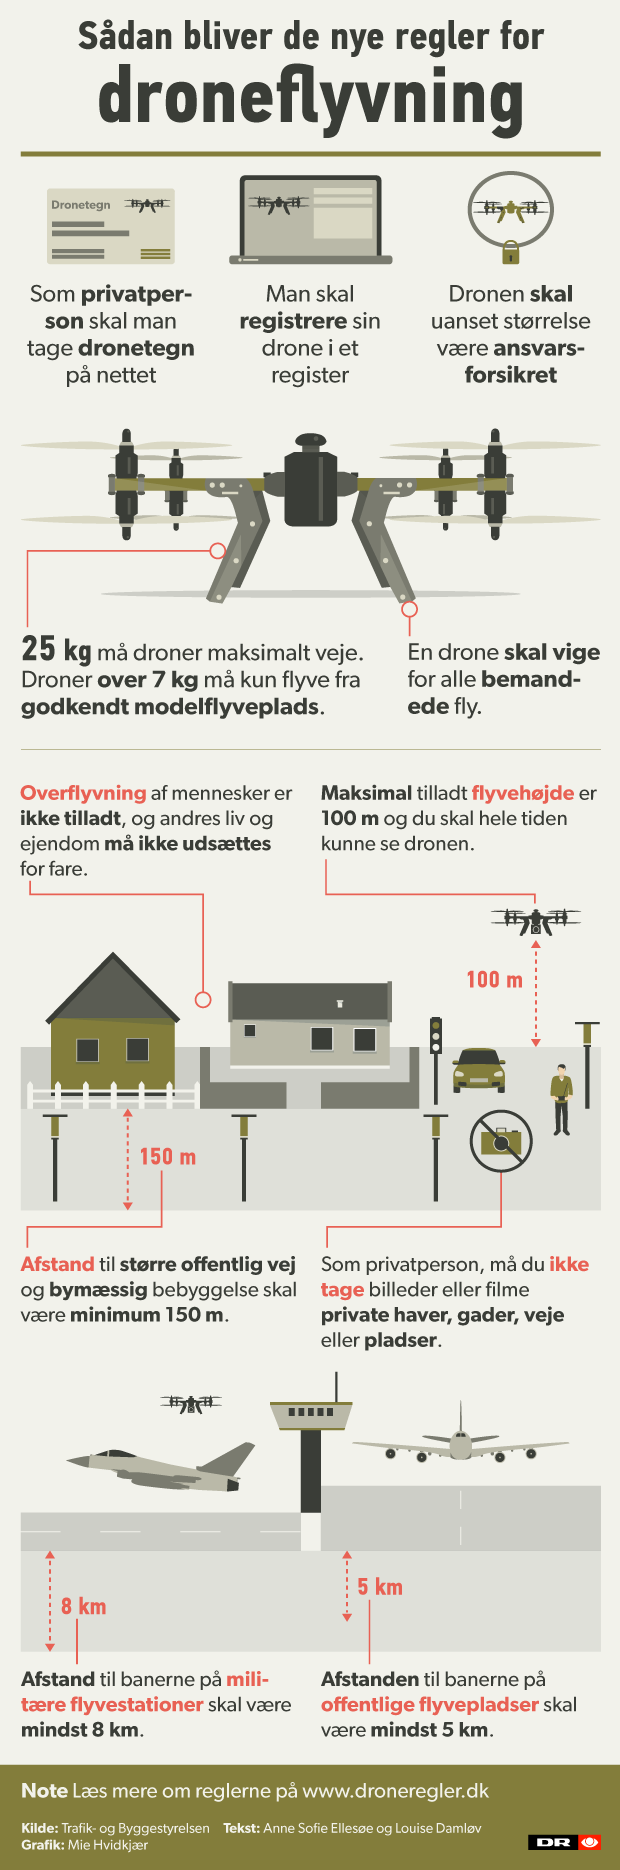 Vær sød at lade være Kalksten skrot GRAFIK Dronetegn, forsikring og flyvehøjde: Sådan må du flyve med din drone  | Indland | DR